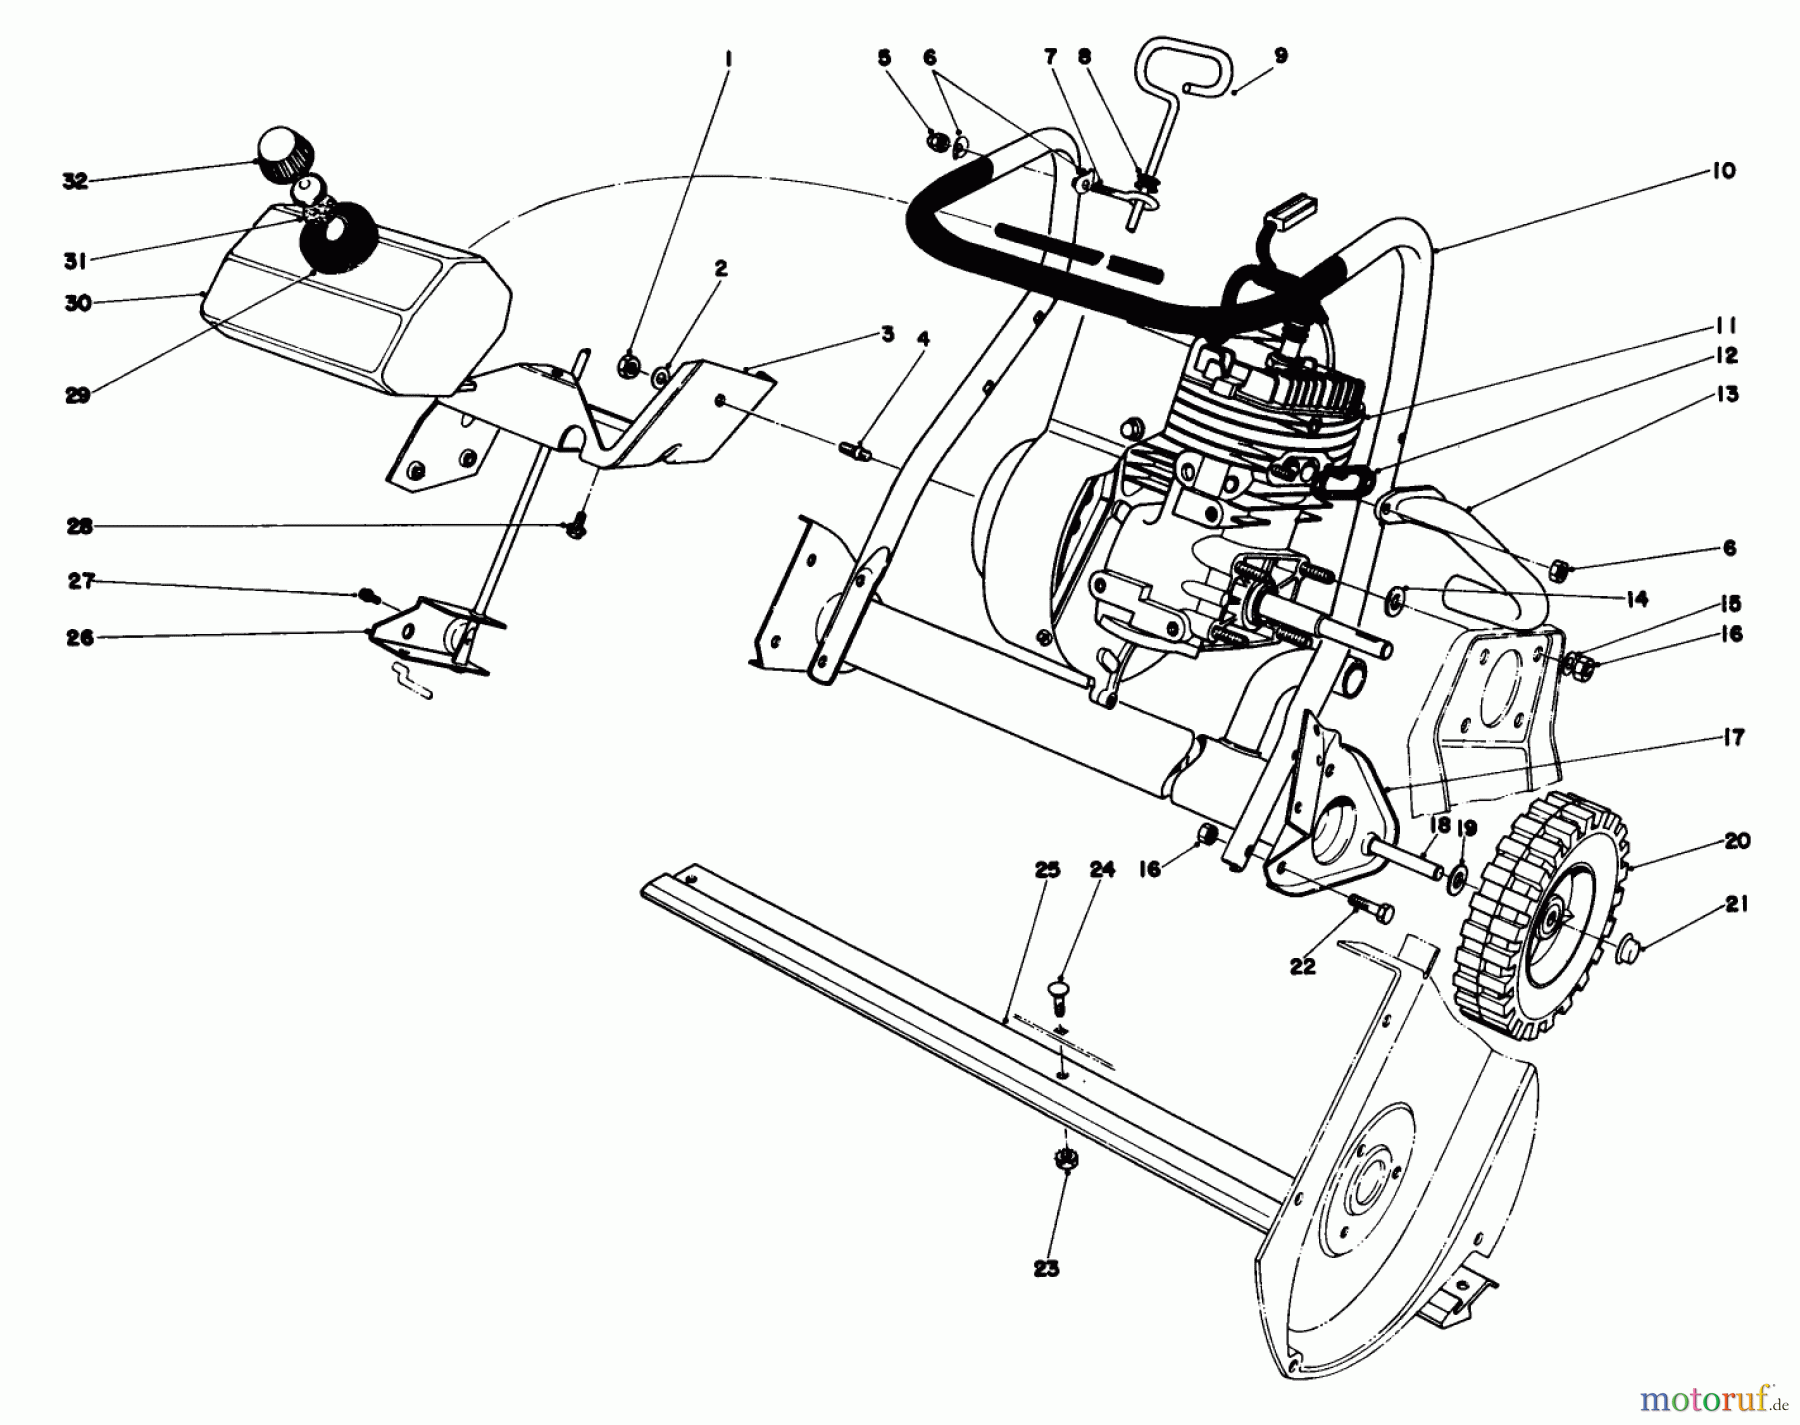  Toro Neu Snow Blowers/Snow Throwers Seite 1 38232 (S-200) - Toro S-200 Snowthrower, 1982 (2000001-2999999) ENGINE ASSEMBLY